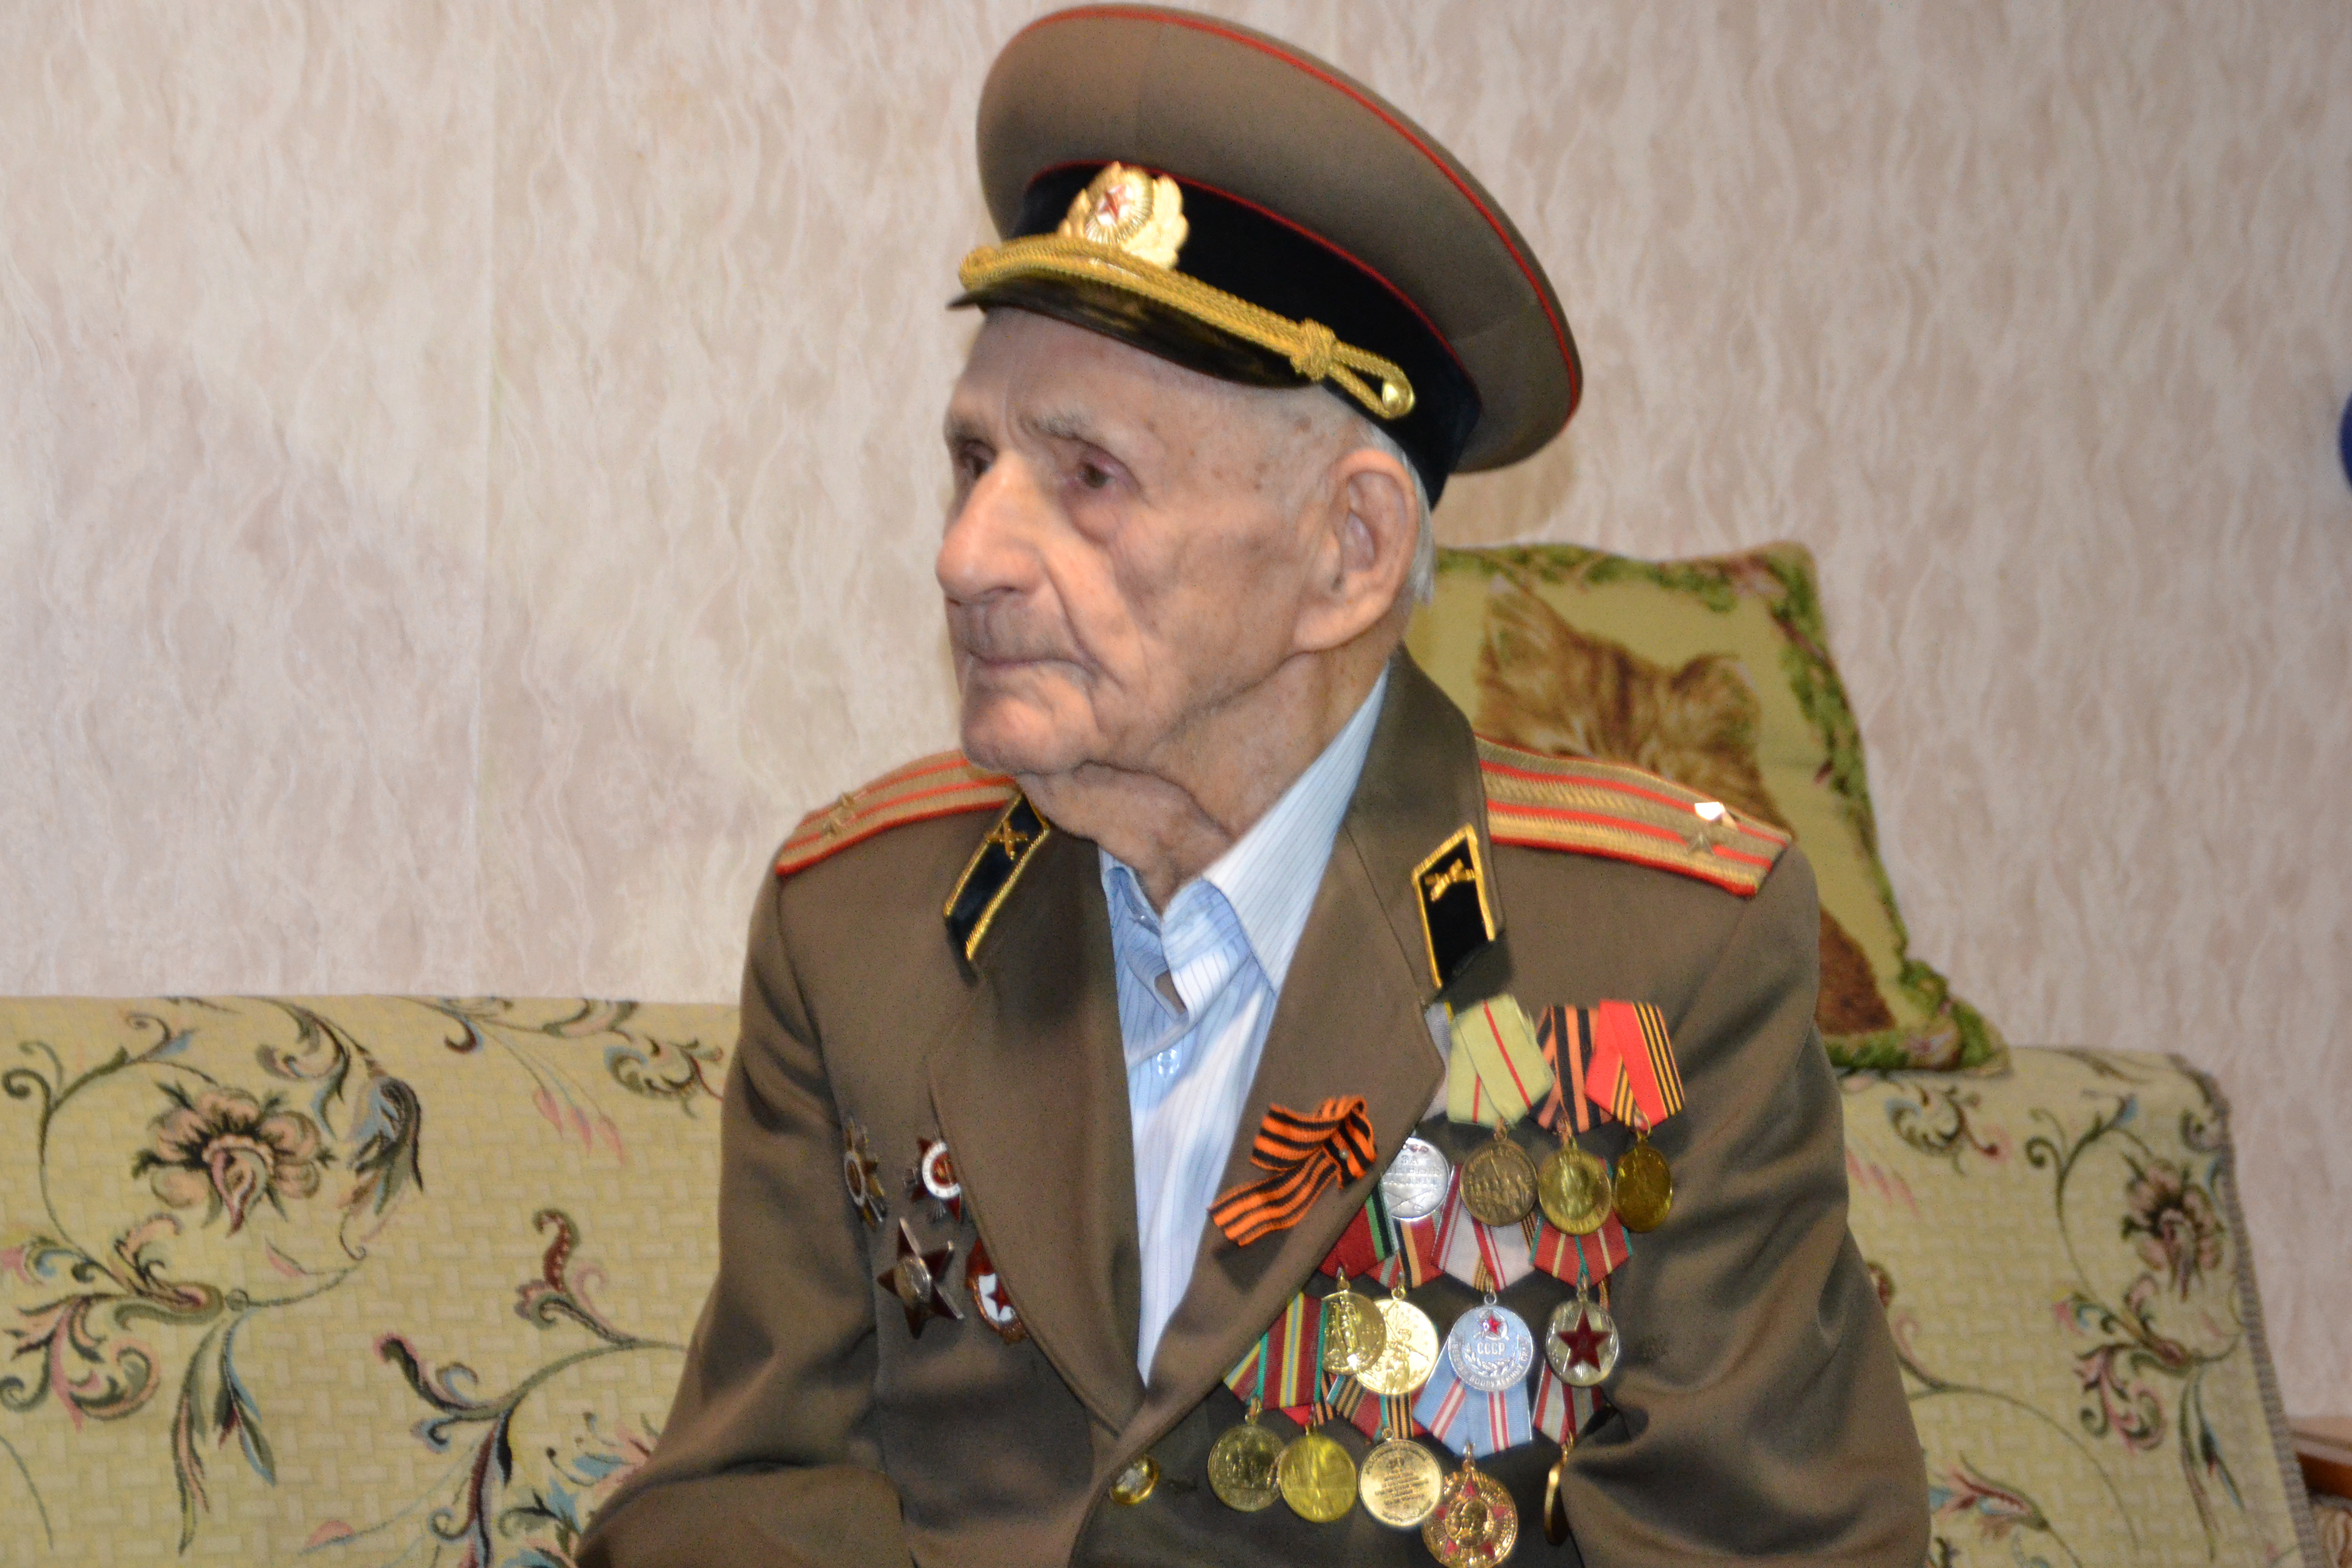 Ветеранов Великой Отечественной войны поздравляют с наступающим Новым Годом – Годом памяти и славы 